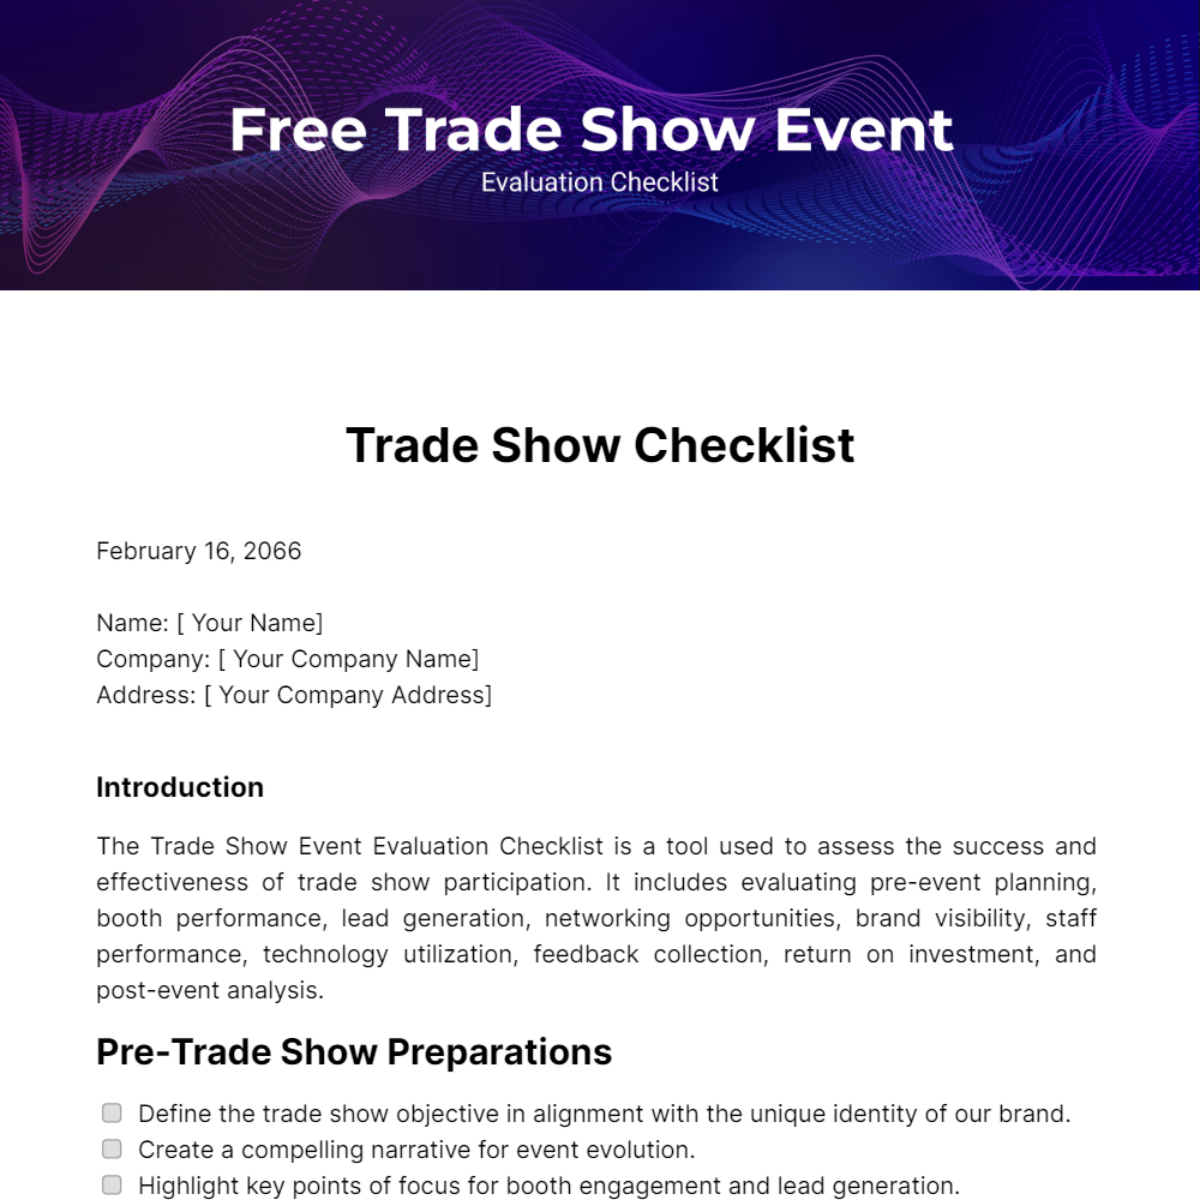 Trade Show Event Evaluation Checklist Template